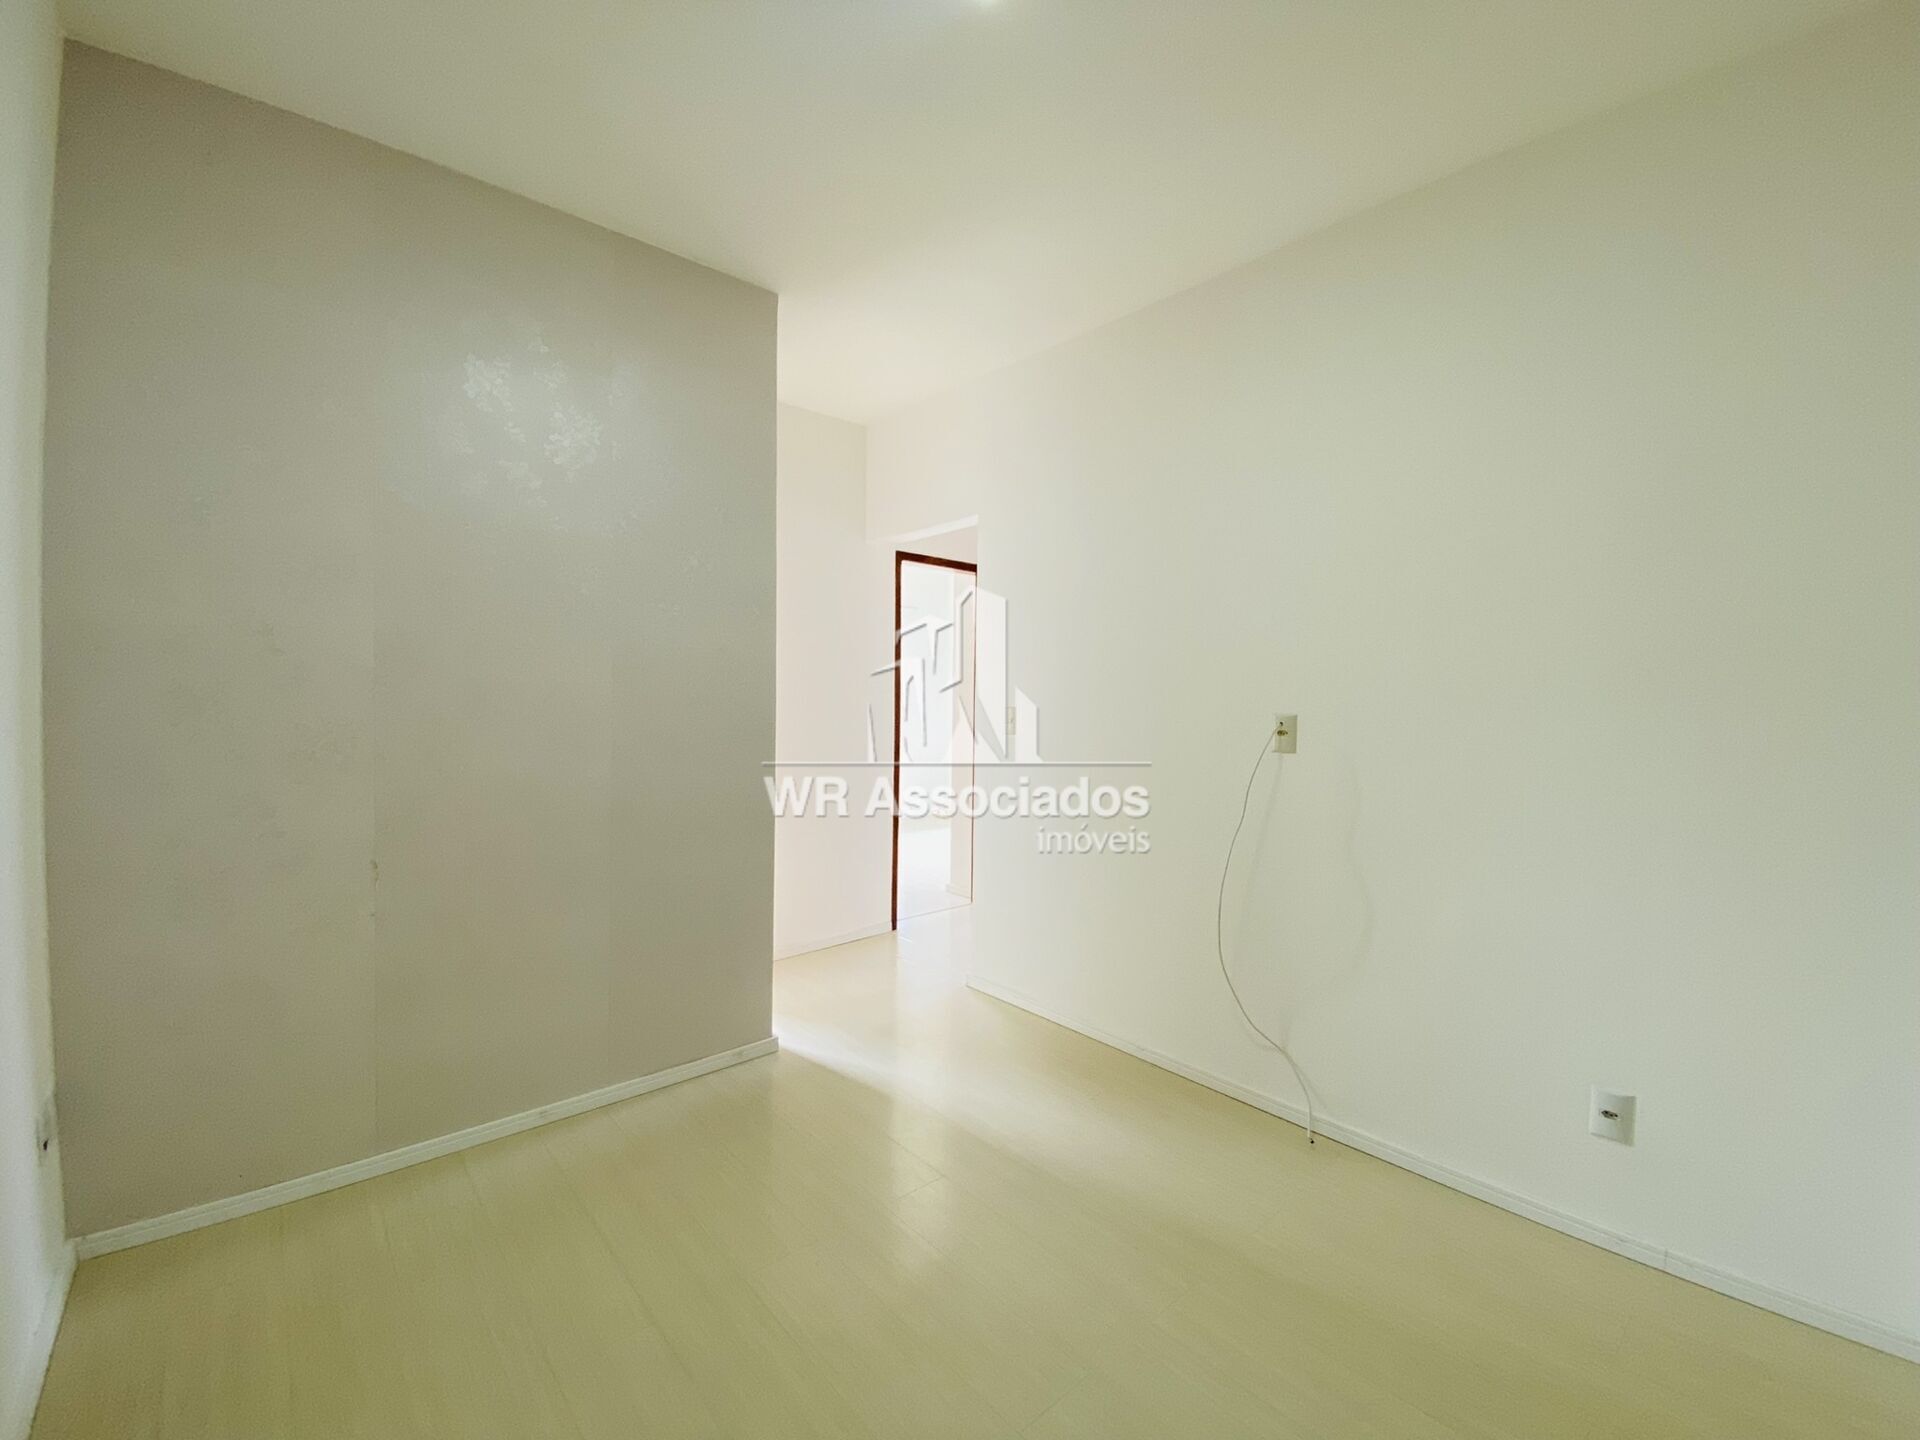 Apartamento, 3 quartos, 58 m² - Foto 2